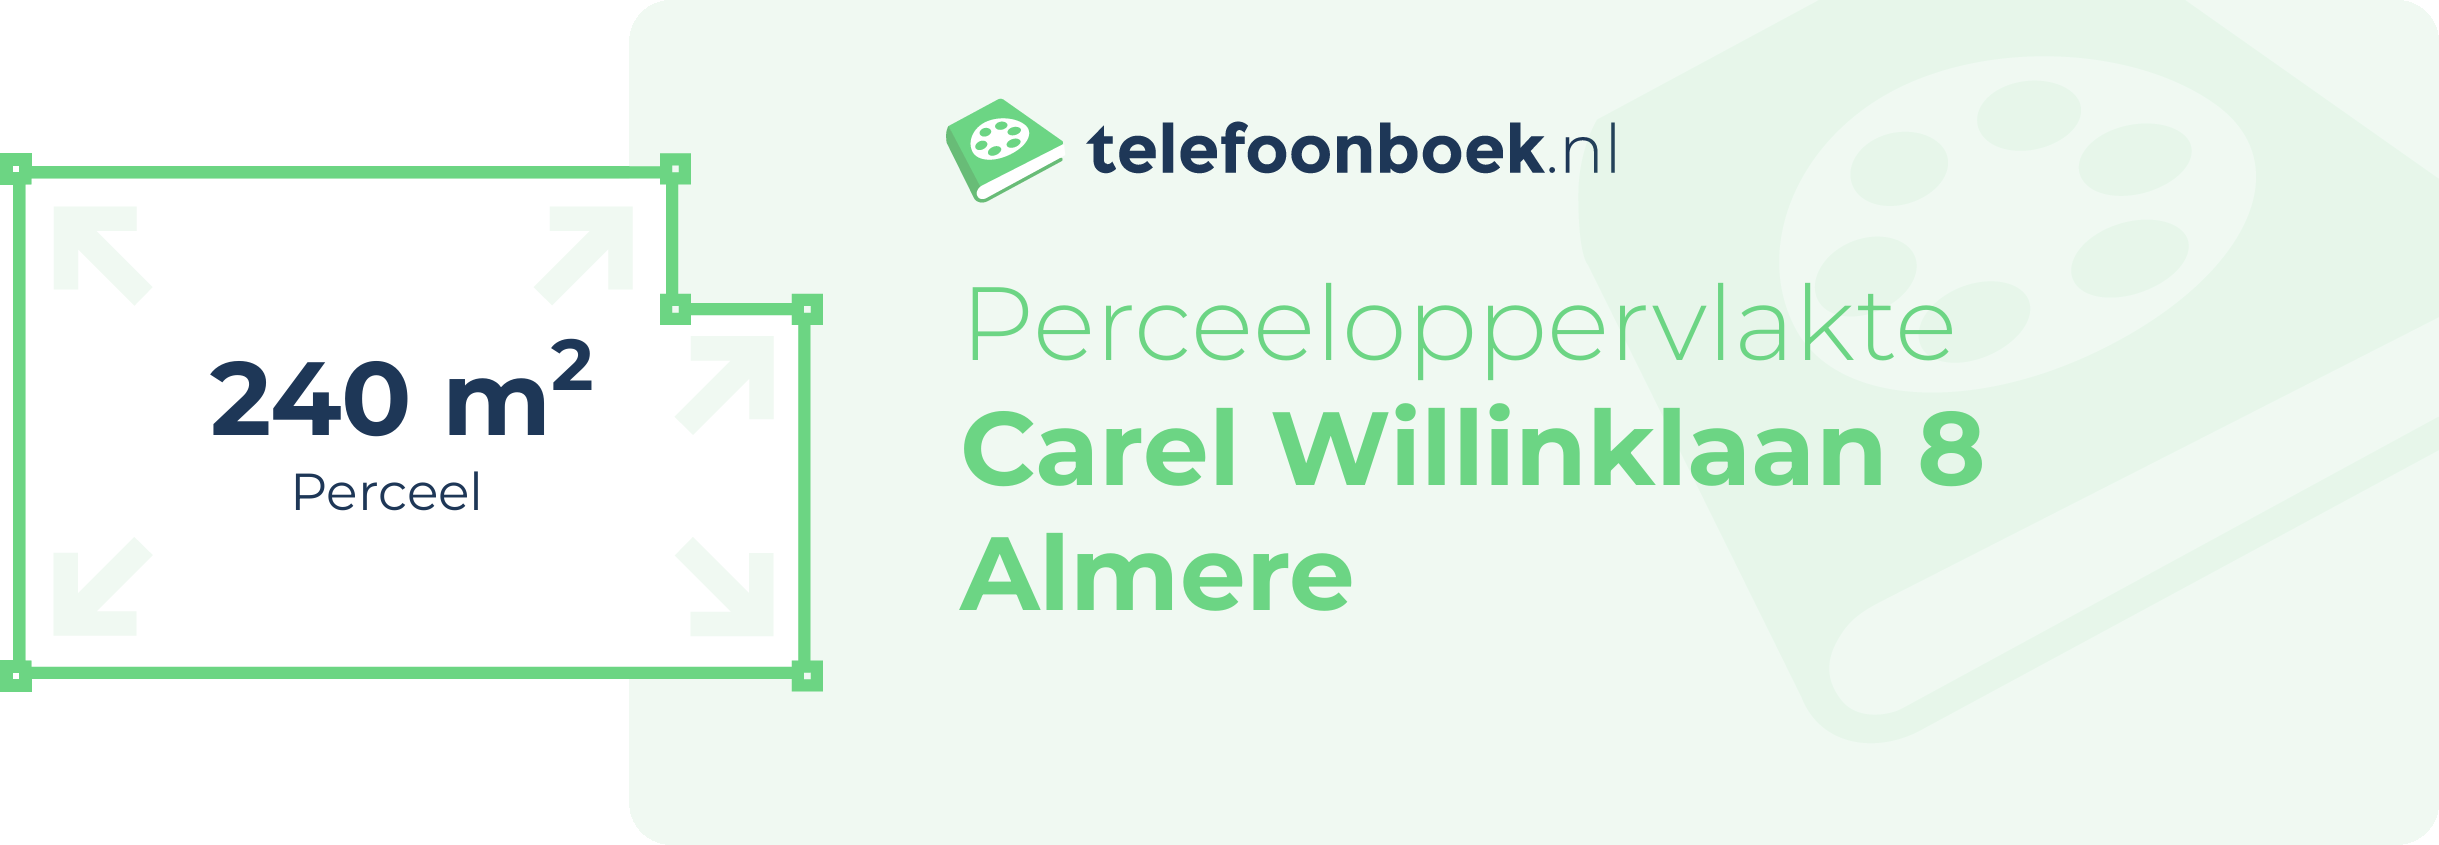 Perceeloppervlakte Carel Willinklaan 8 Almere